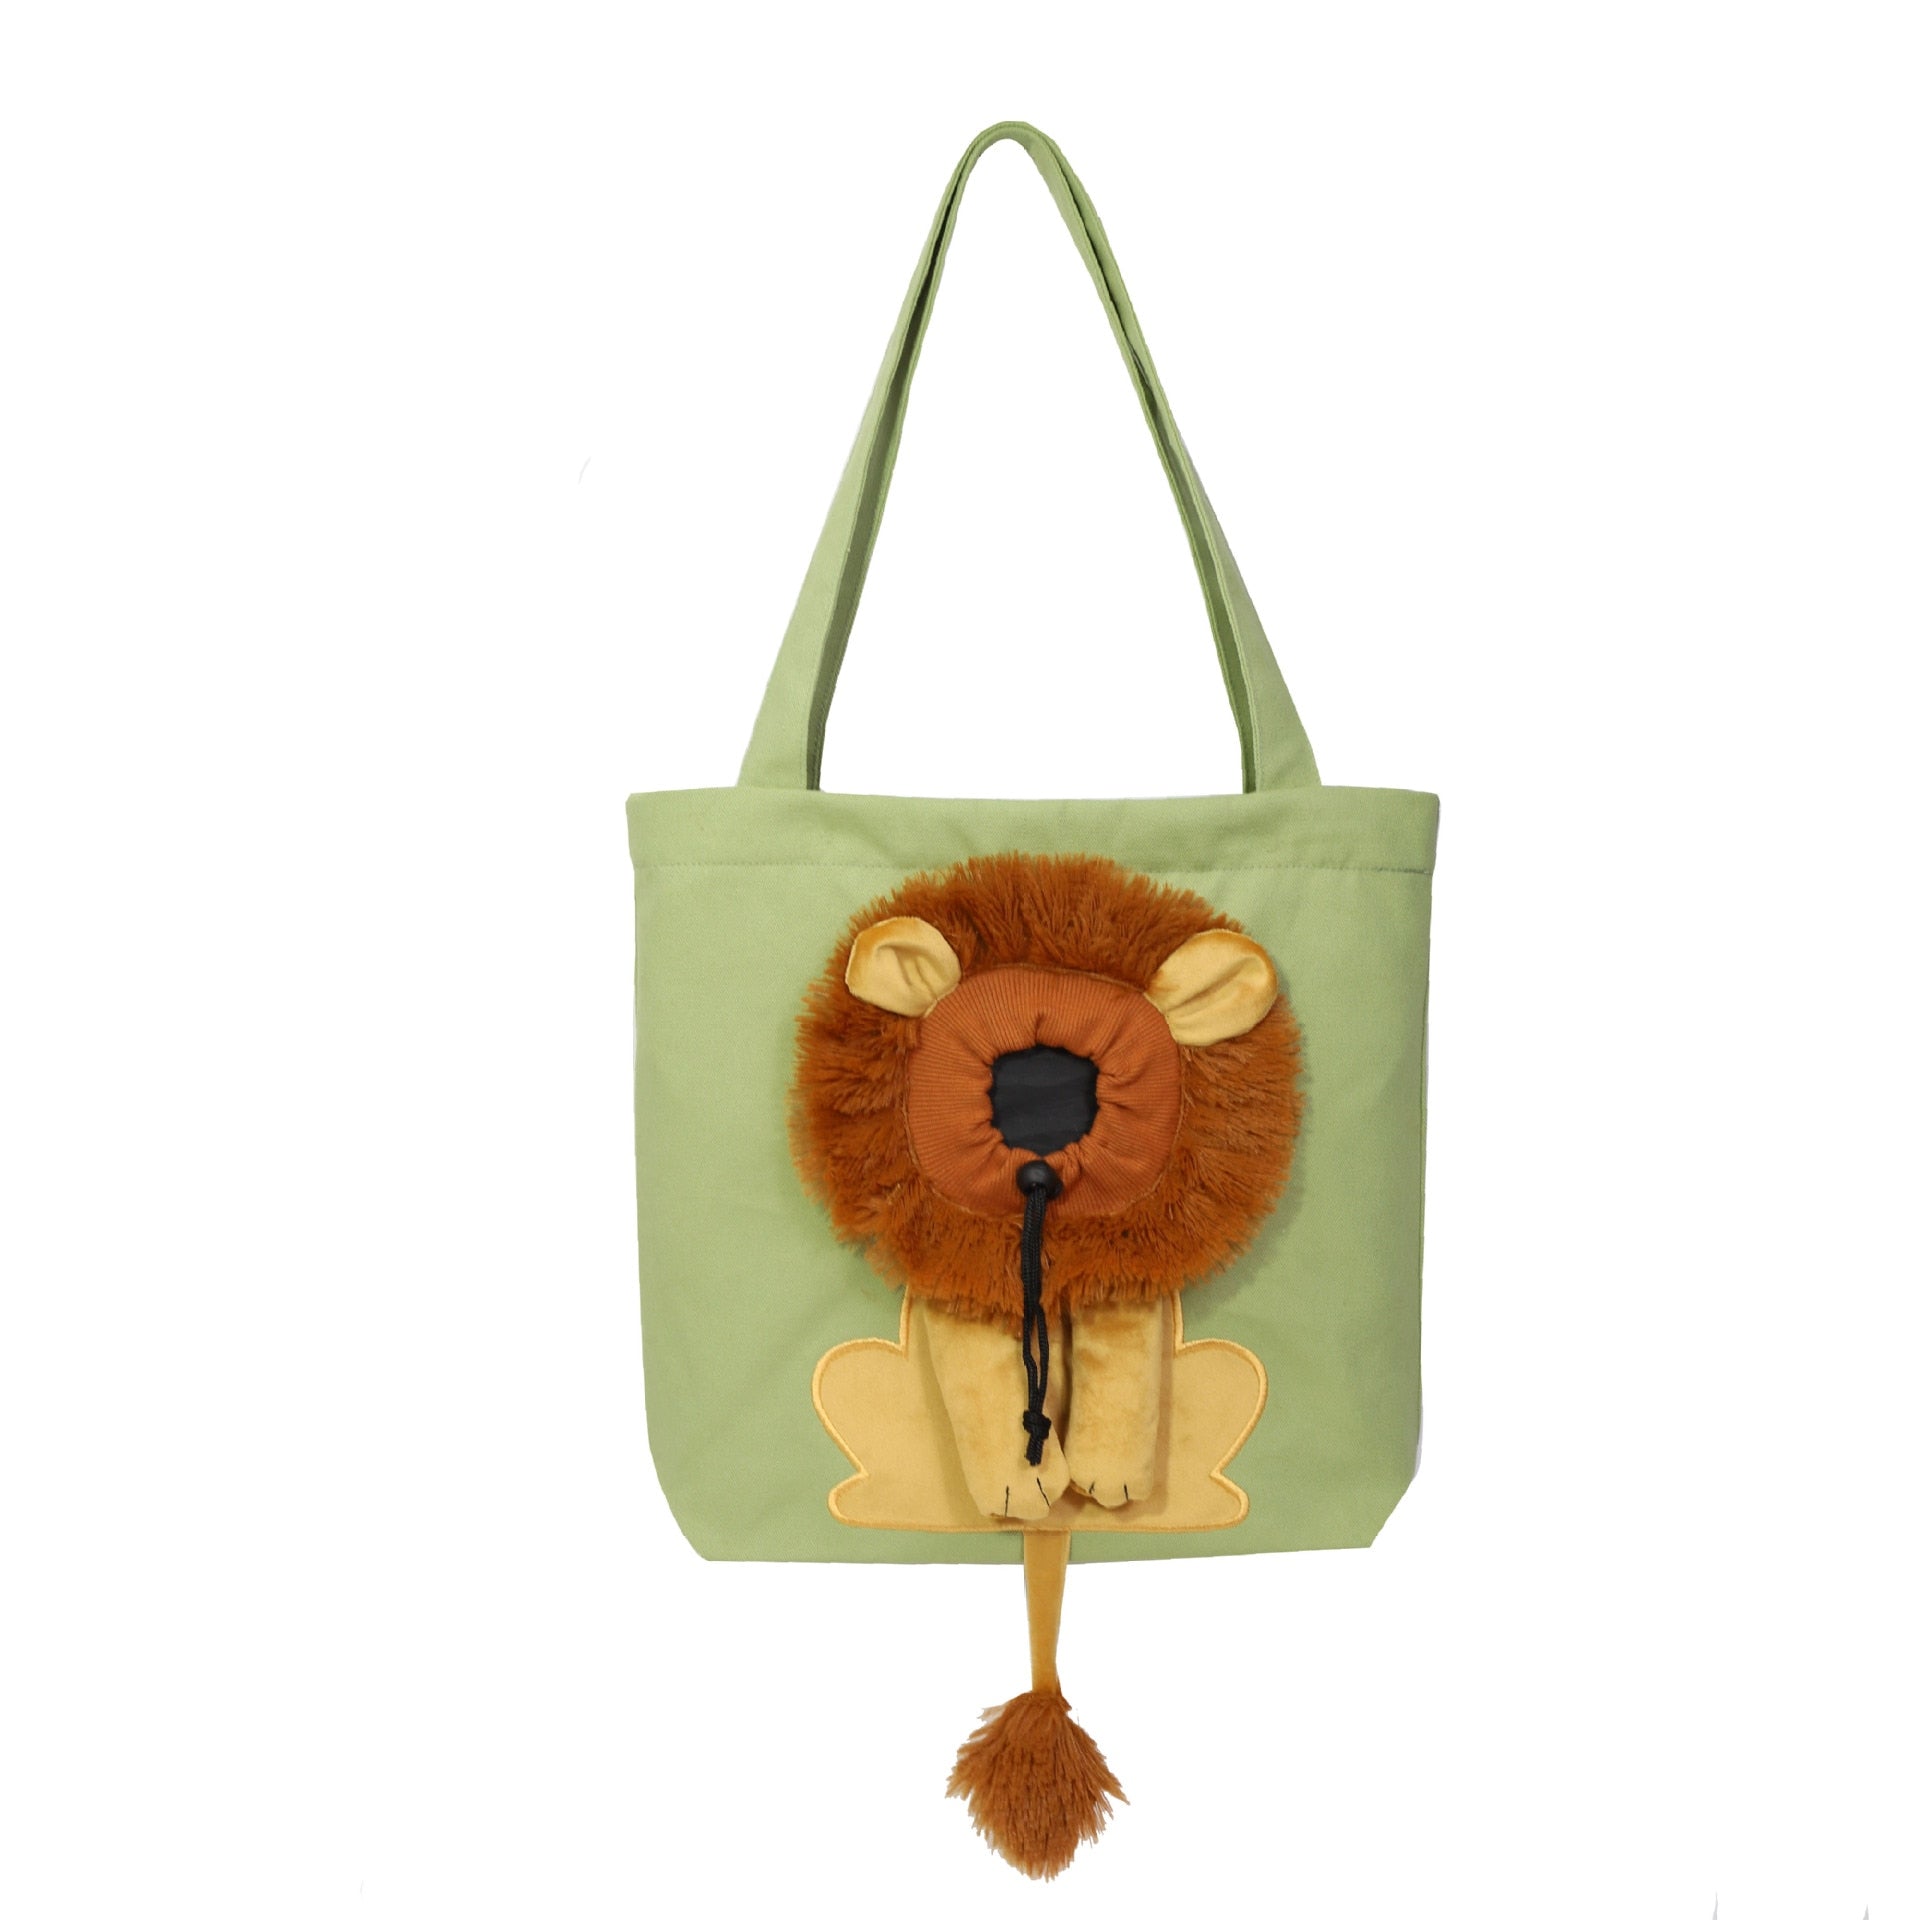 Cartoon Shape Lion Canvas Pet Shoulder Bag